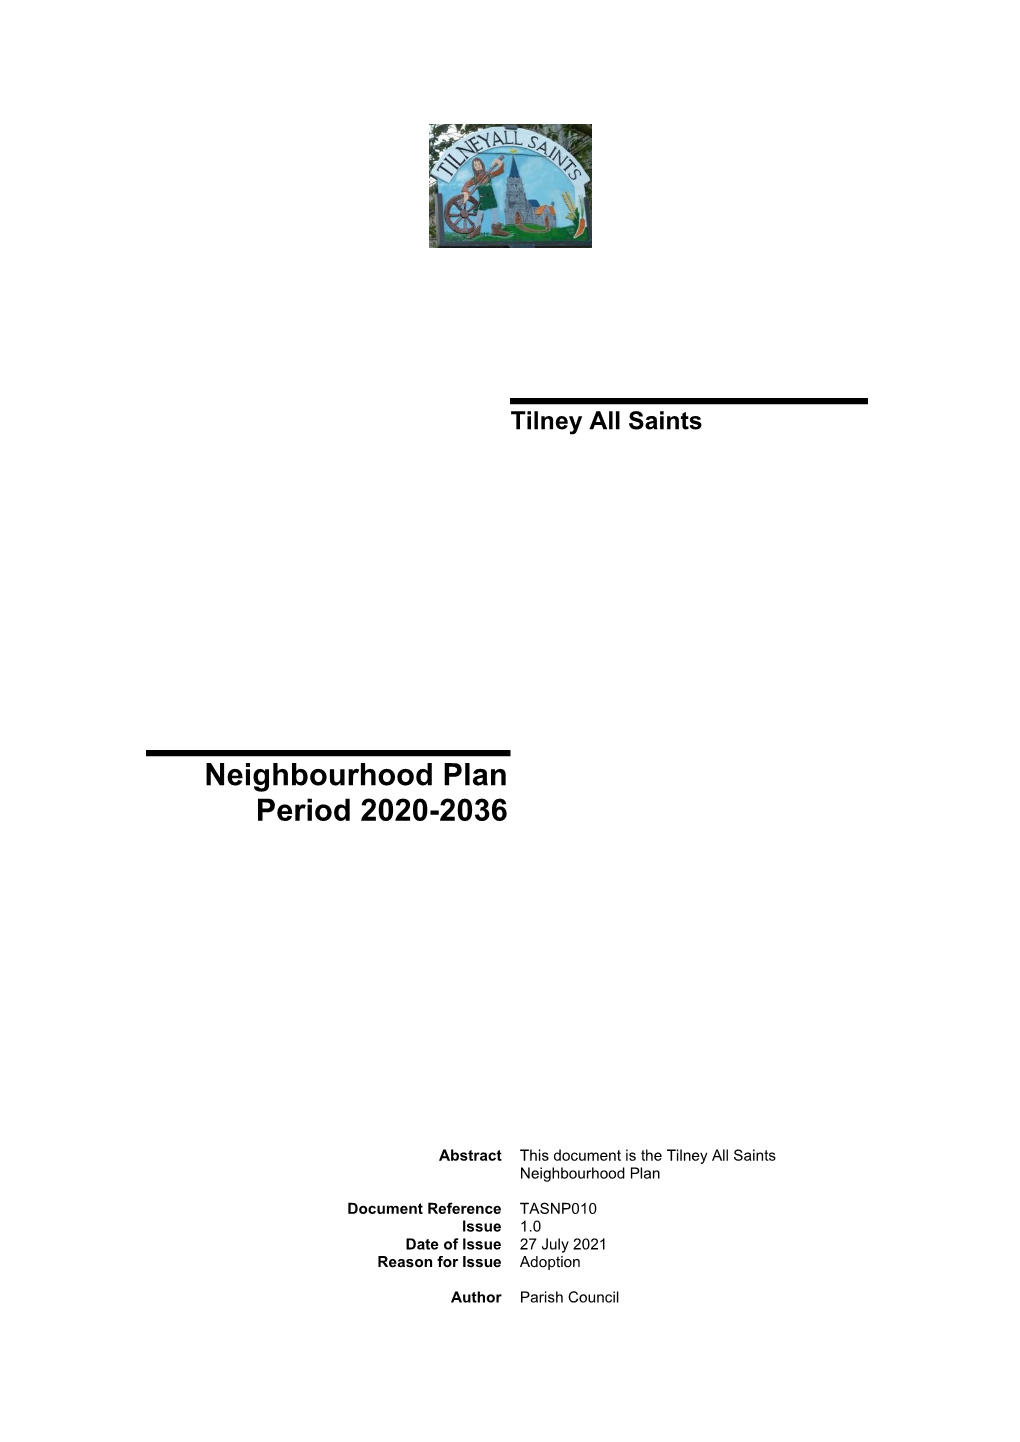 Tilney All Saints Neighbourhood Plan I 1.0.Docx Date/Issue No: 2021-07-27 / Tilney All Saints Neighbourhood Plan